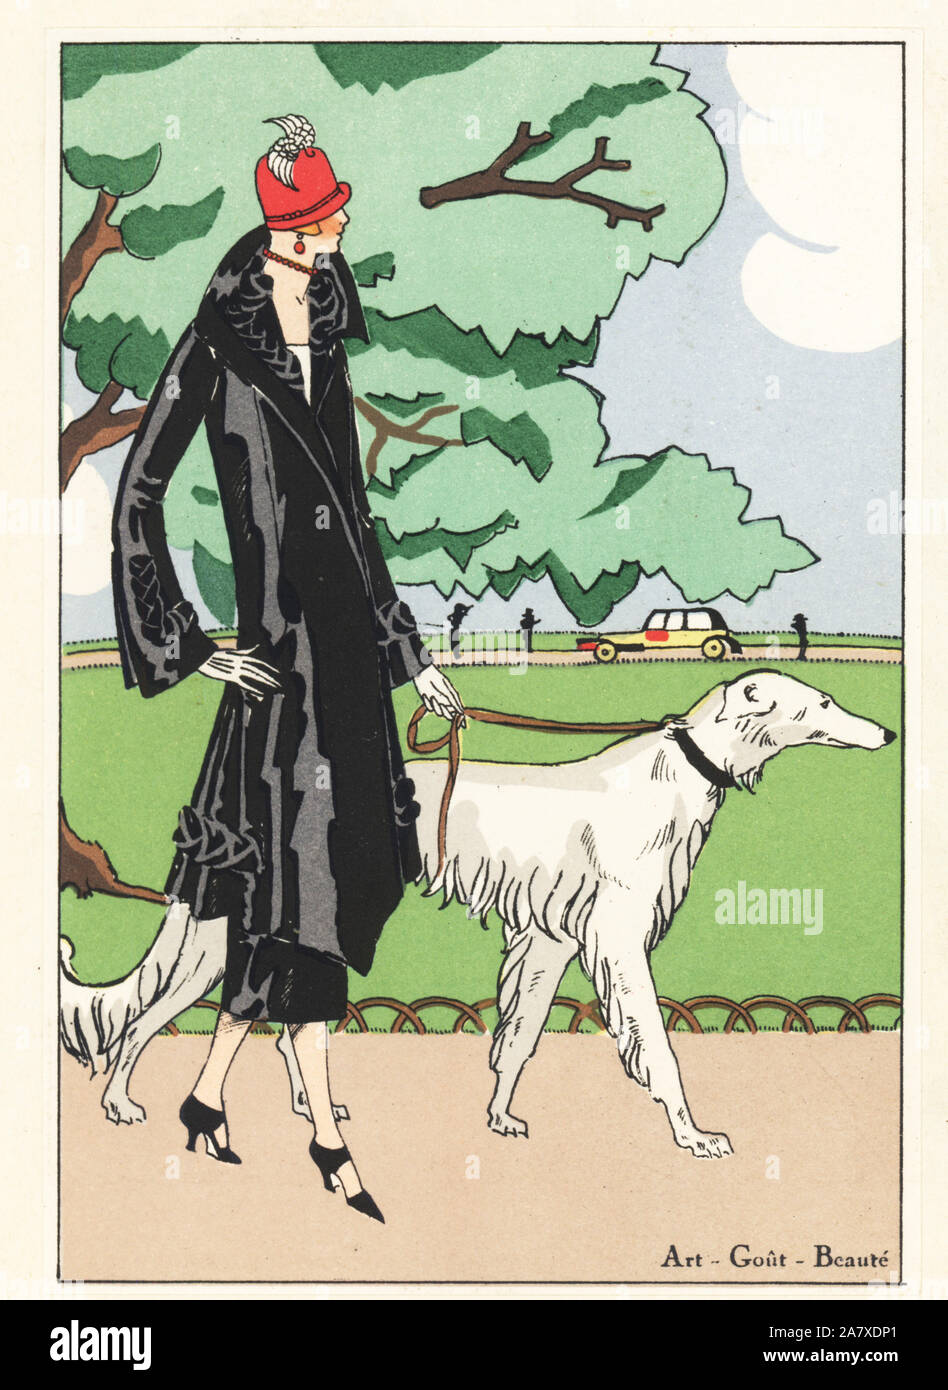 La donna in nero ottoman tre-ensemble di pezzo a piedi un cane cane in un parco. Pochoir Handcolored (stencil) litografia dal lusso francese rivista di moda arte, gotta, Beaute, 1925. Foto Stock